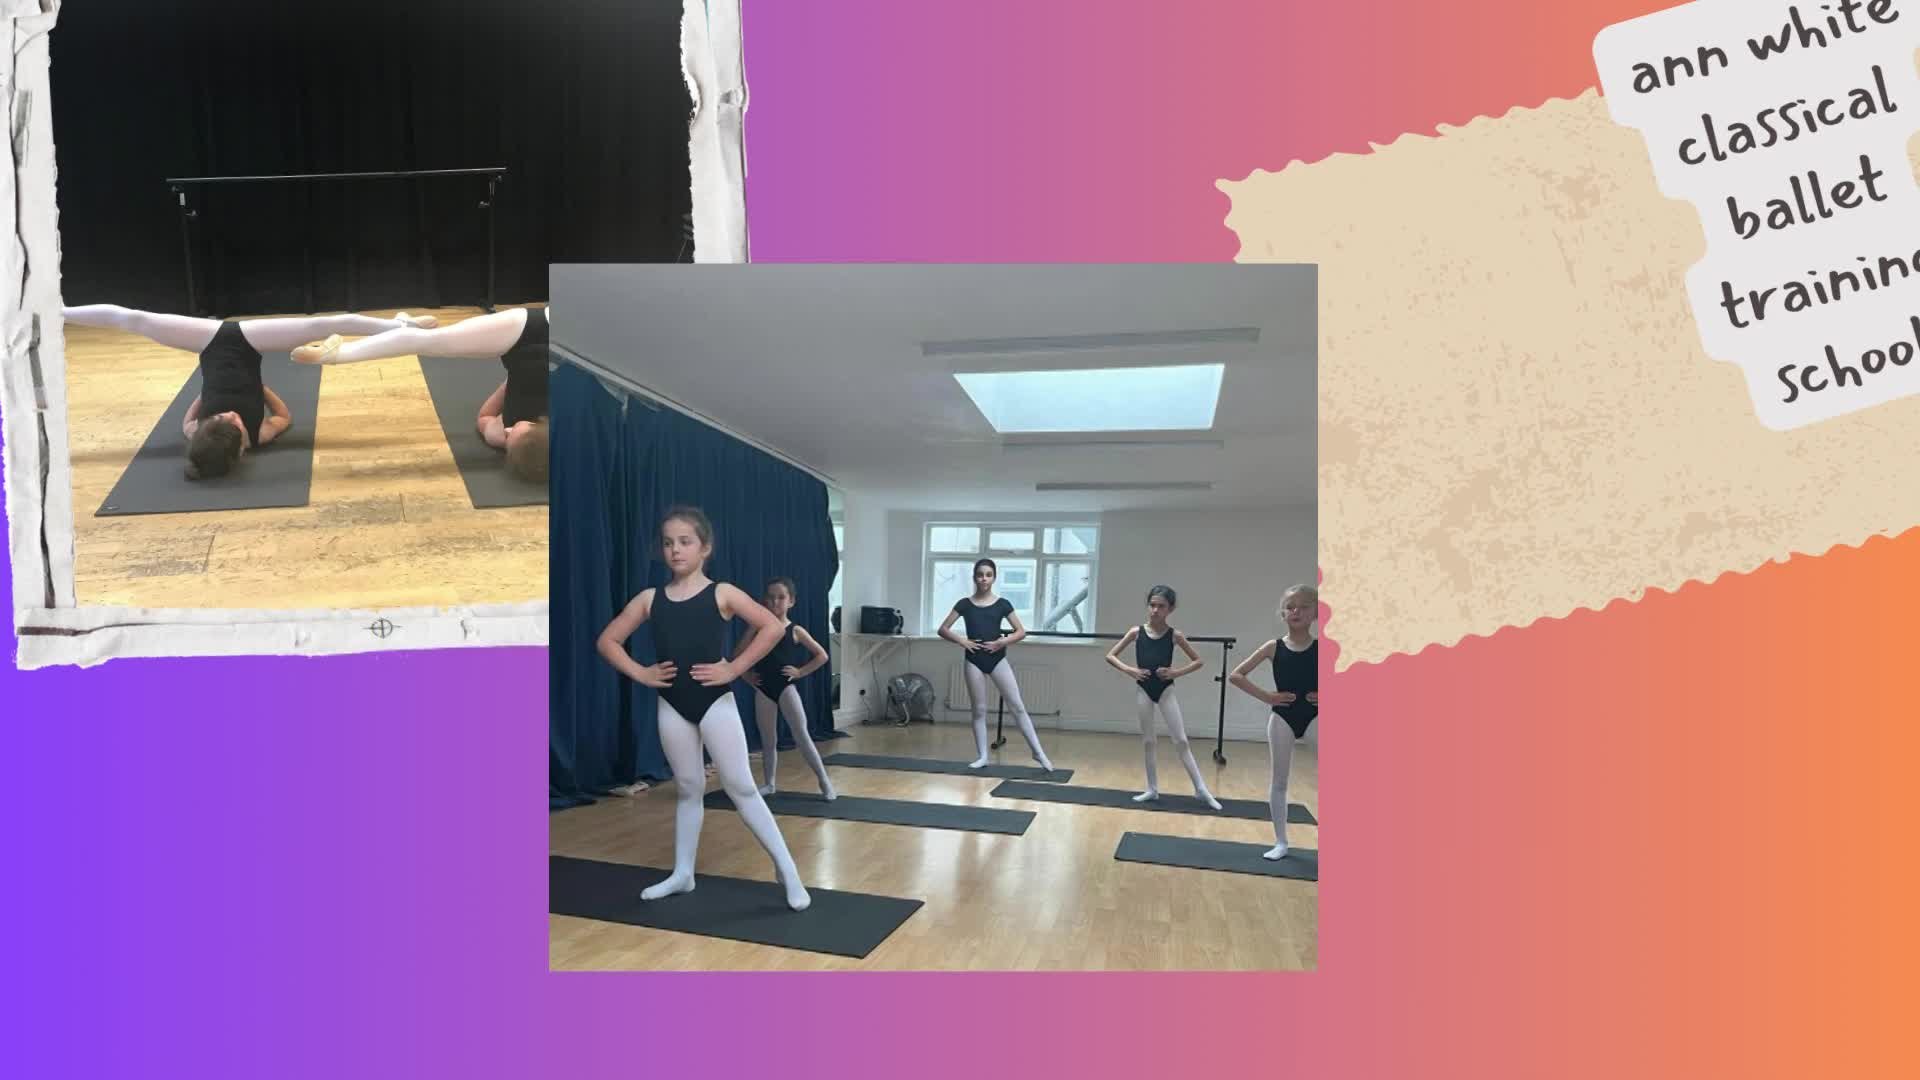  ballet  TRAINING classes for children      thumbnail